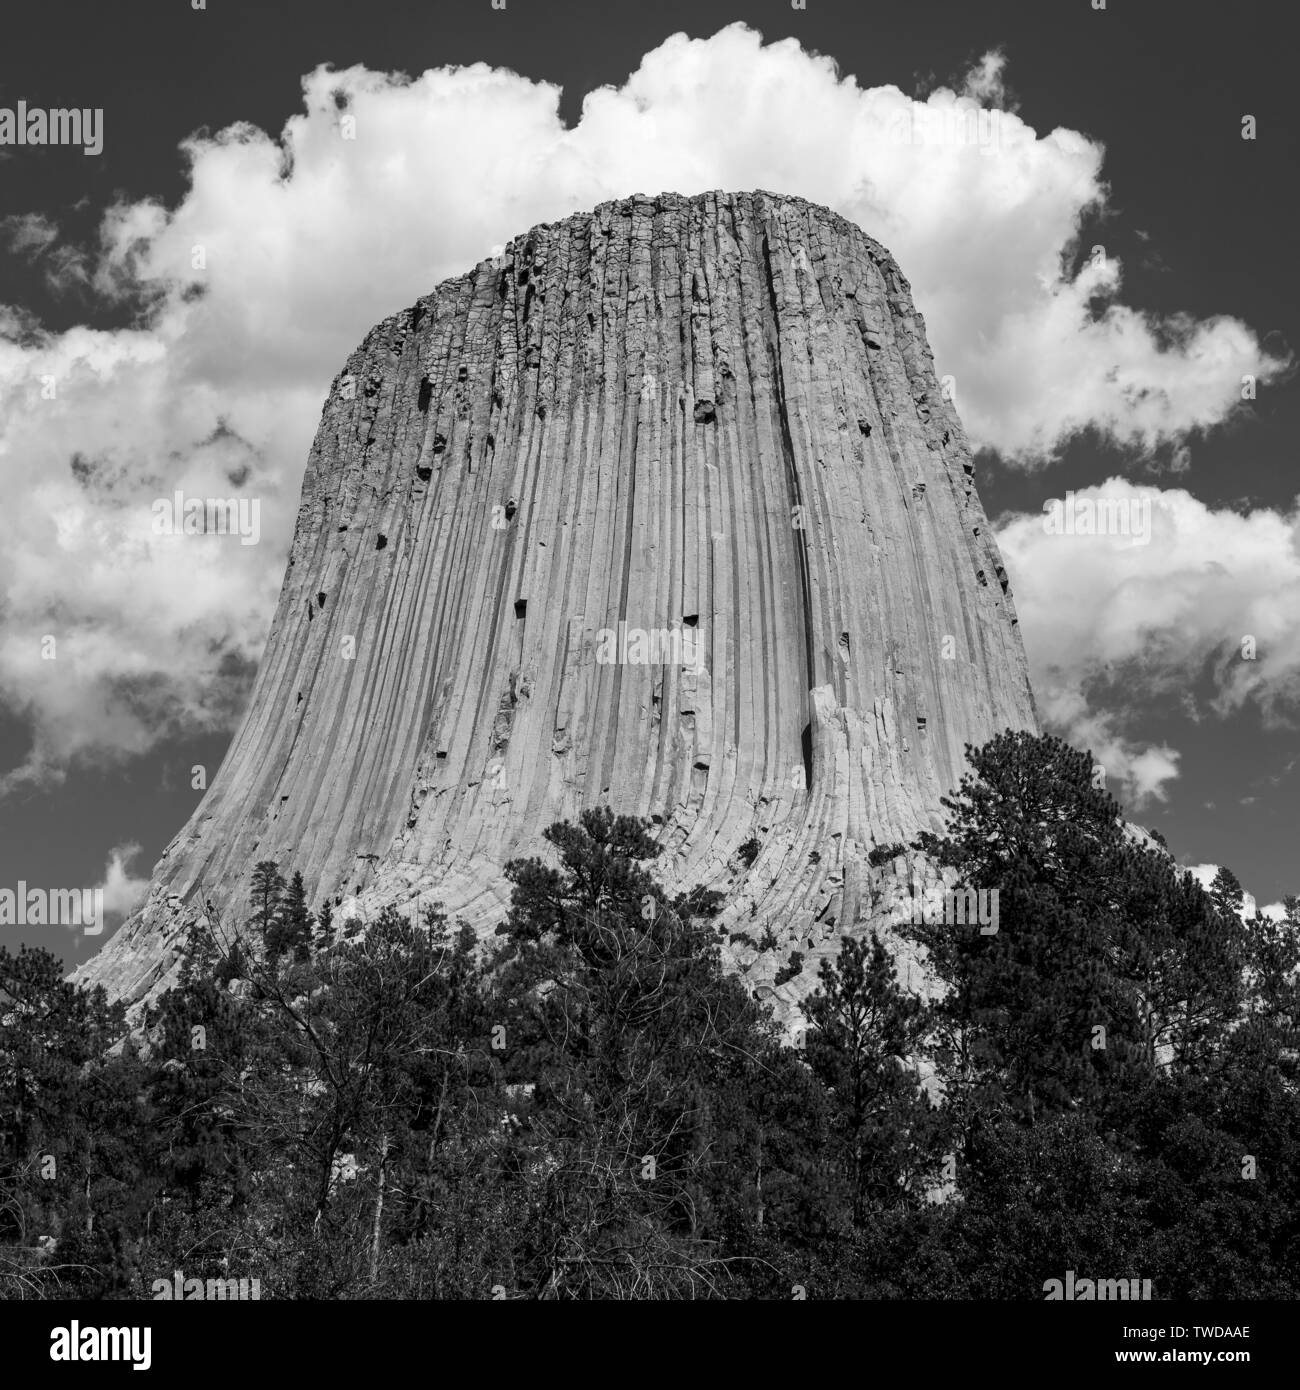 Carré noir et blanc photographie de la formation de roche géologique de Devils Tower national monument au Wyoming, États-Unis d'Amérique, USA. Banque D'Images